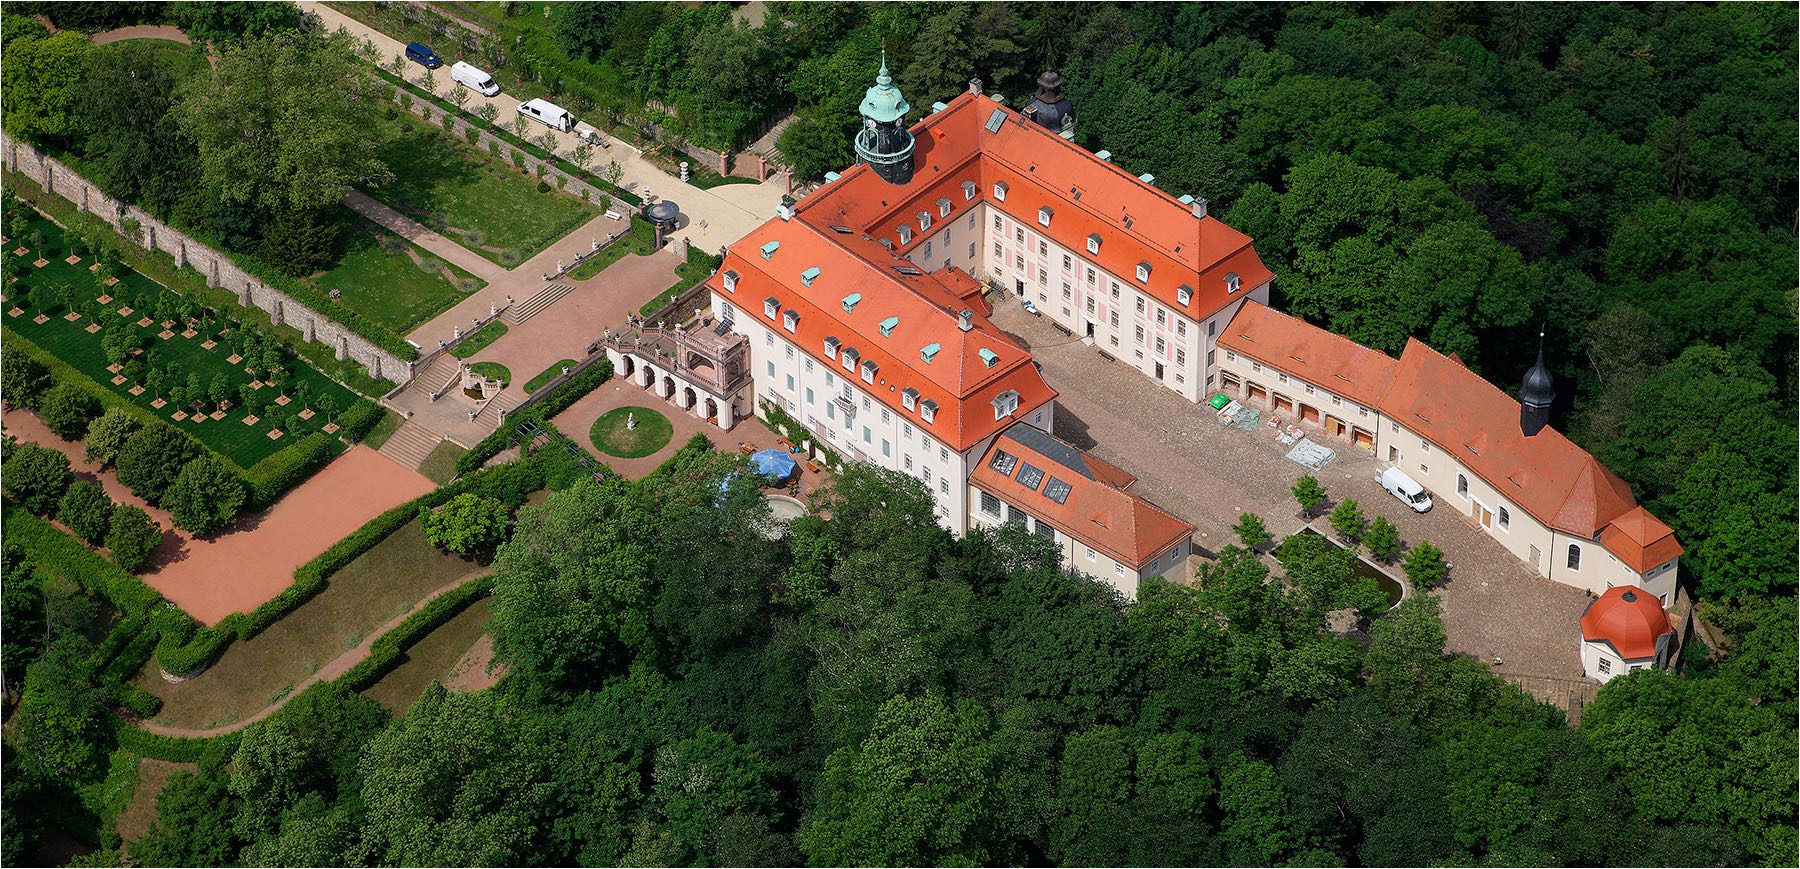  Luftbildfotografie. Schloss Lichtenwalde bei Chemnitz aus der Luft aufgenommen. Copyright by Fotostudio Jörg Riethausen 